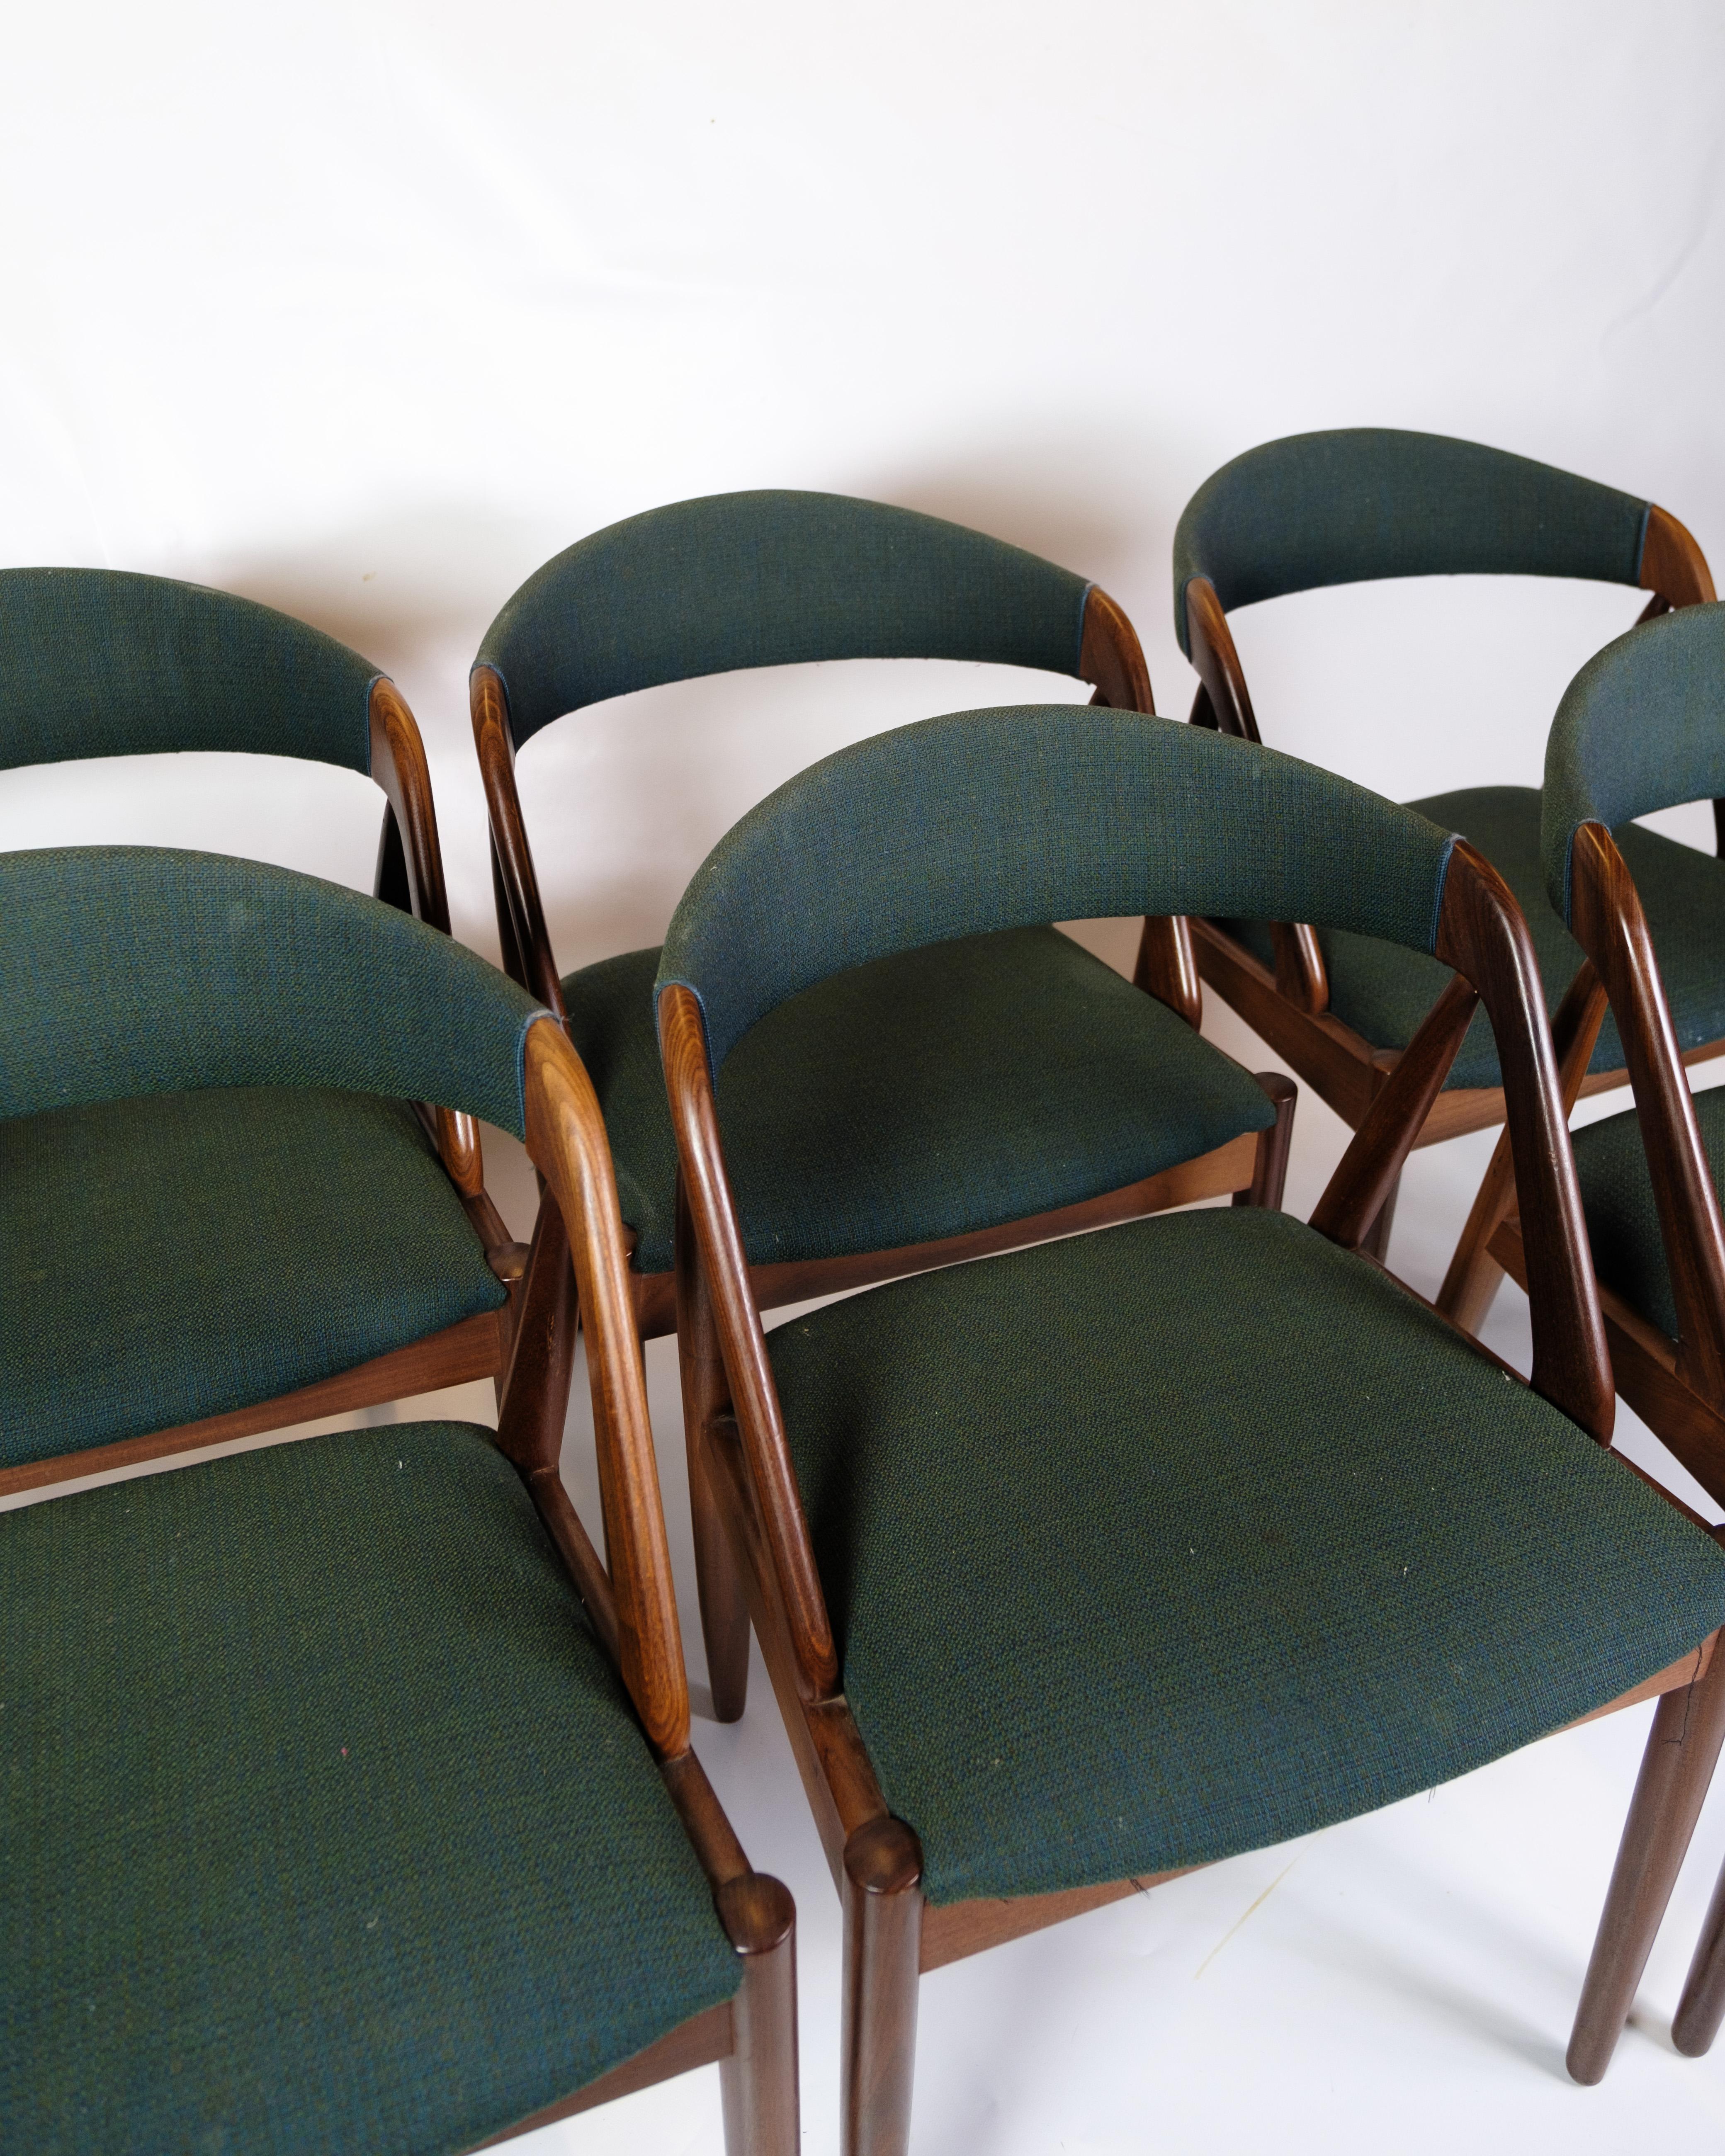 L'ensemble de six chaises de salle à manger, modèle 31, est un exemple unique de mobilier danois intemporel des années 1950. Conçues par le célèbre designer de meubles Kai Kristiansen, ces chaises représentent l'élégance et la fonctionnalité